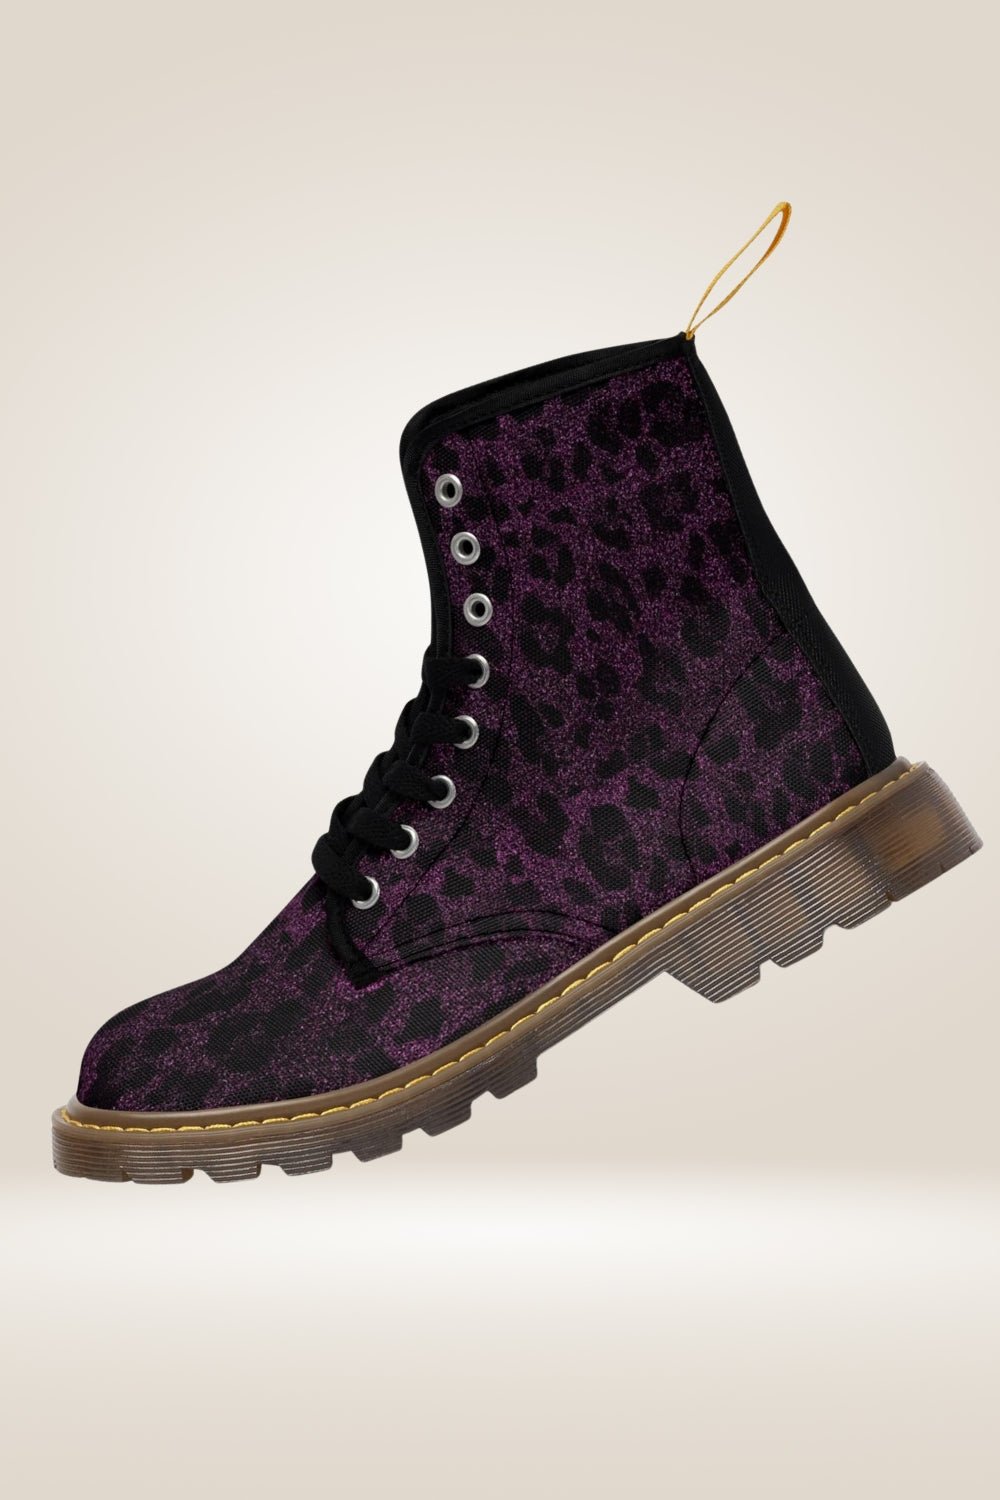 Glitter Print Purple Combat Boots - Brown Sole - TGC Boutique - Combat Boots